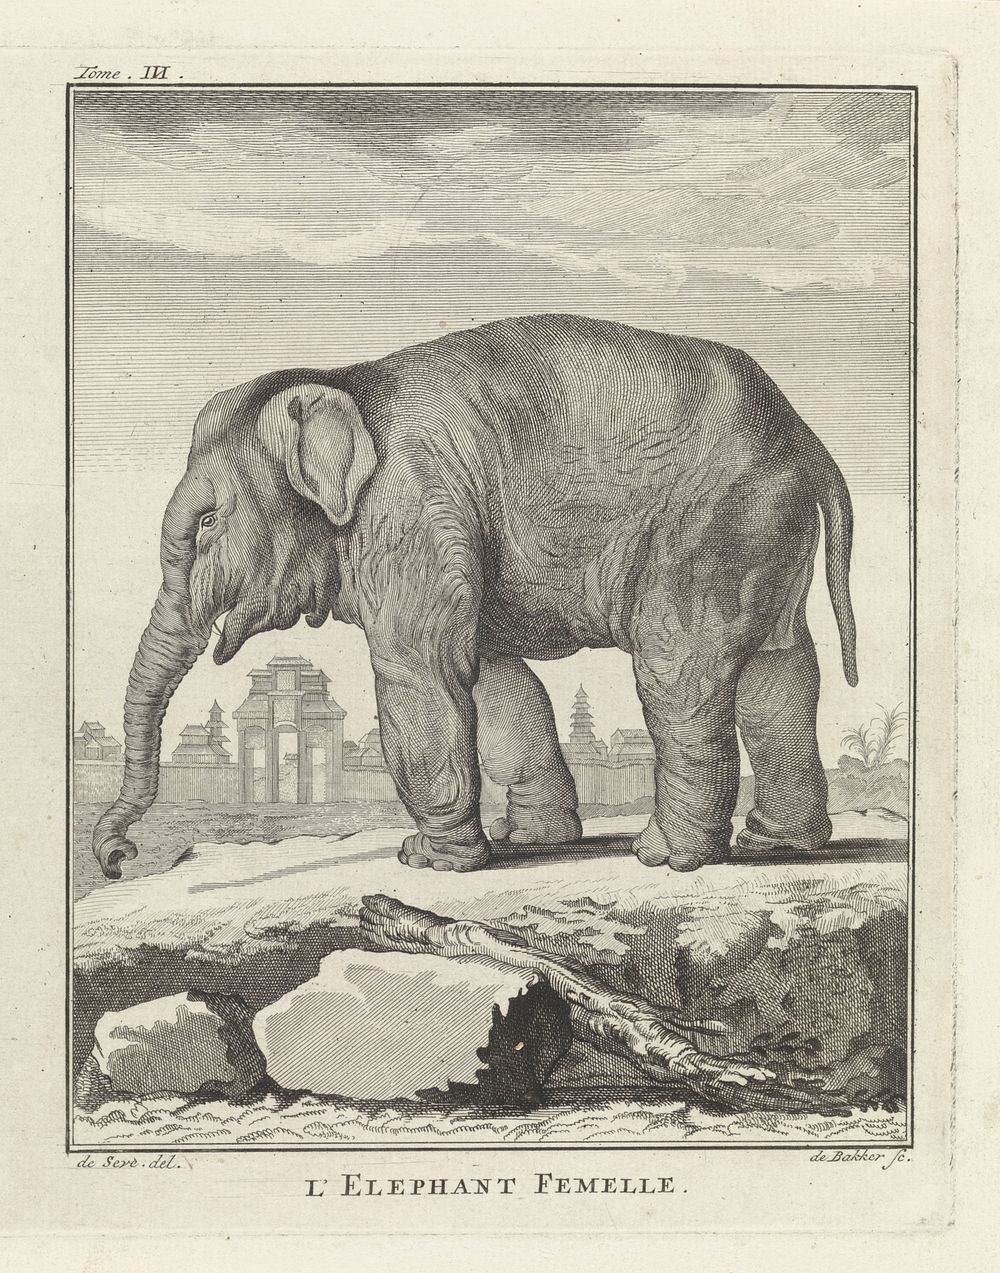 Olifant (1762 - 1804) by Barent de Bakker and De Seve